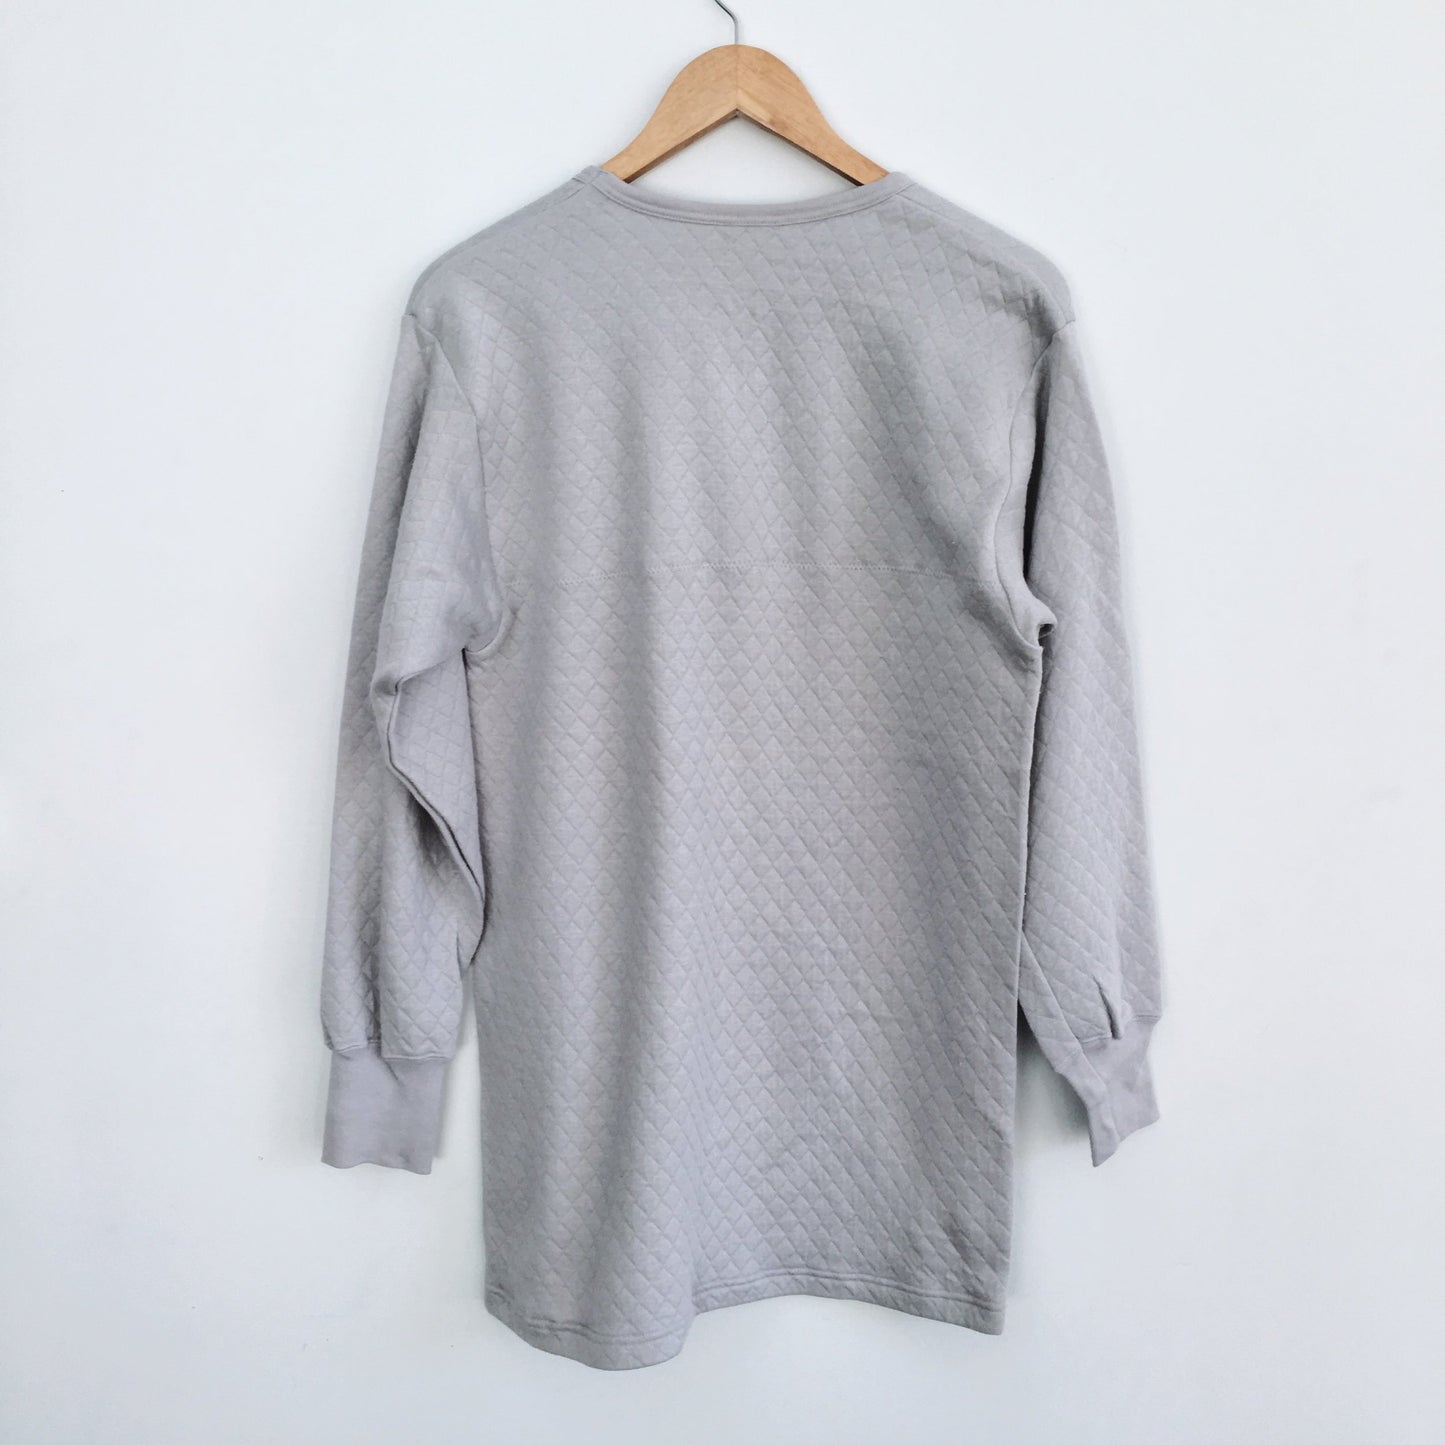 Grey Quilted Sweatshirt - Size Medium